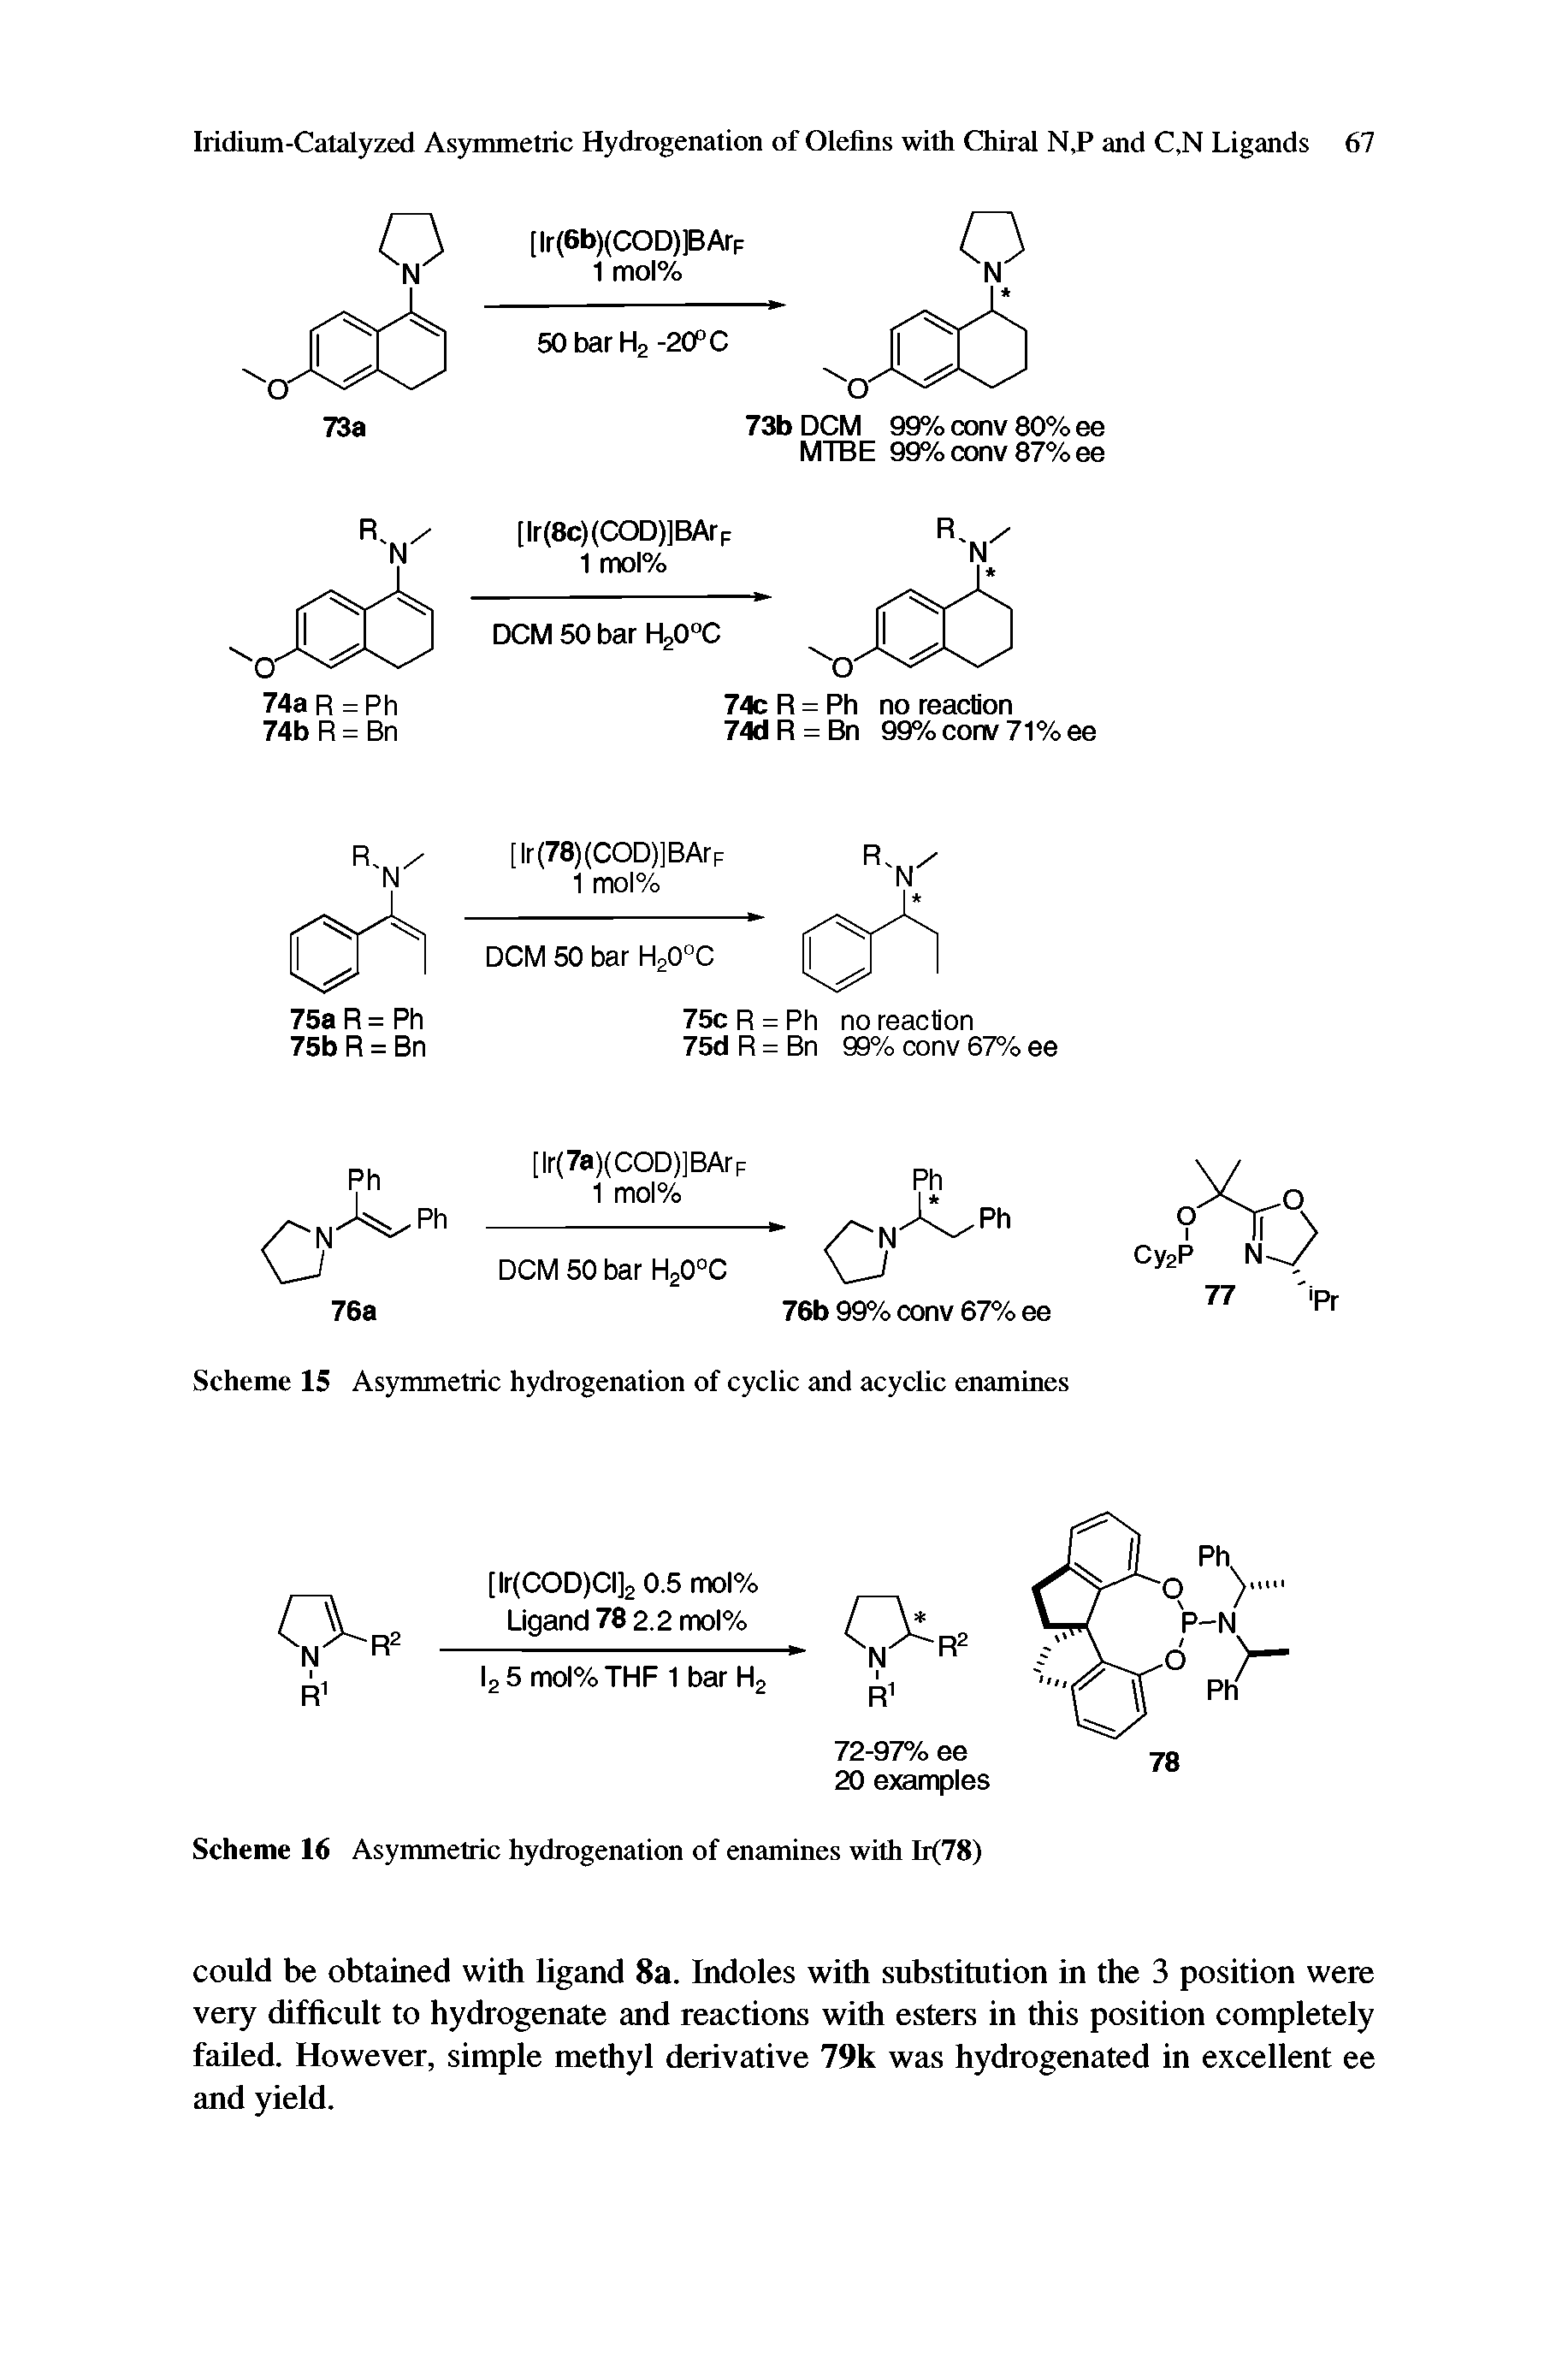 Scheme 15 Asymmetric hydrogenation of cyclic and acyclic enamines...